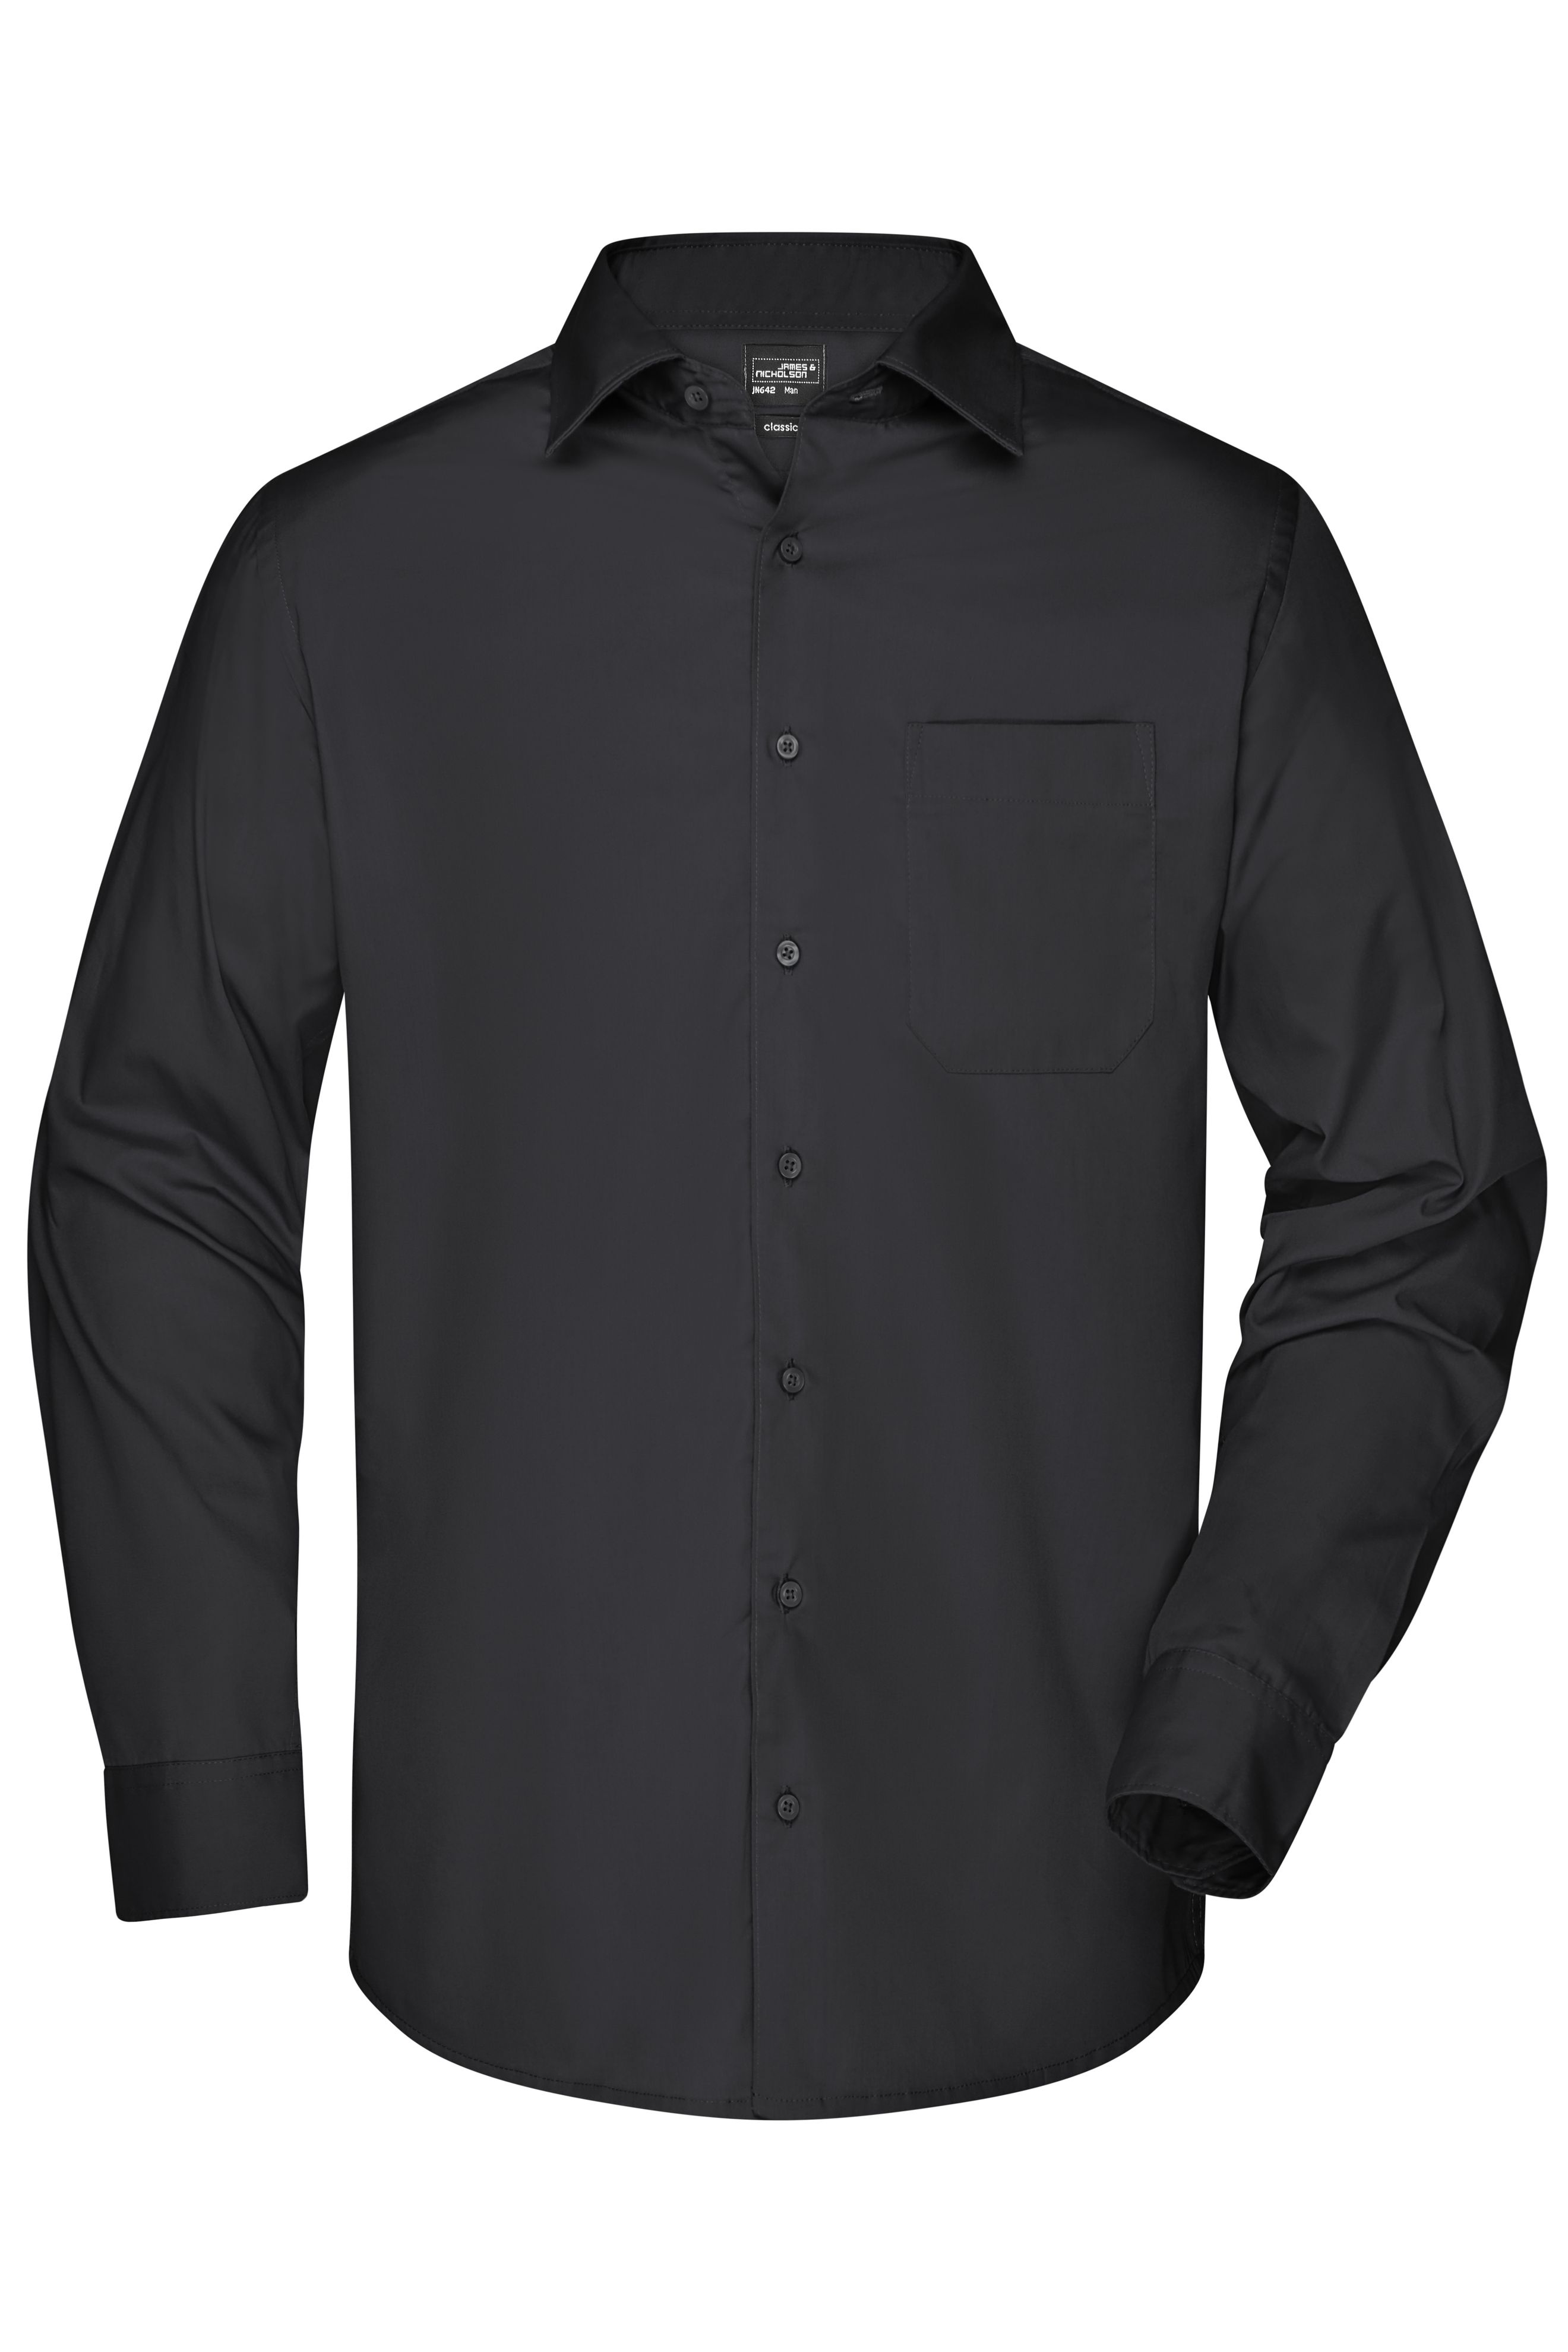 Herren Men's Business Shirt Long-Sleeved Black-Daiber